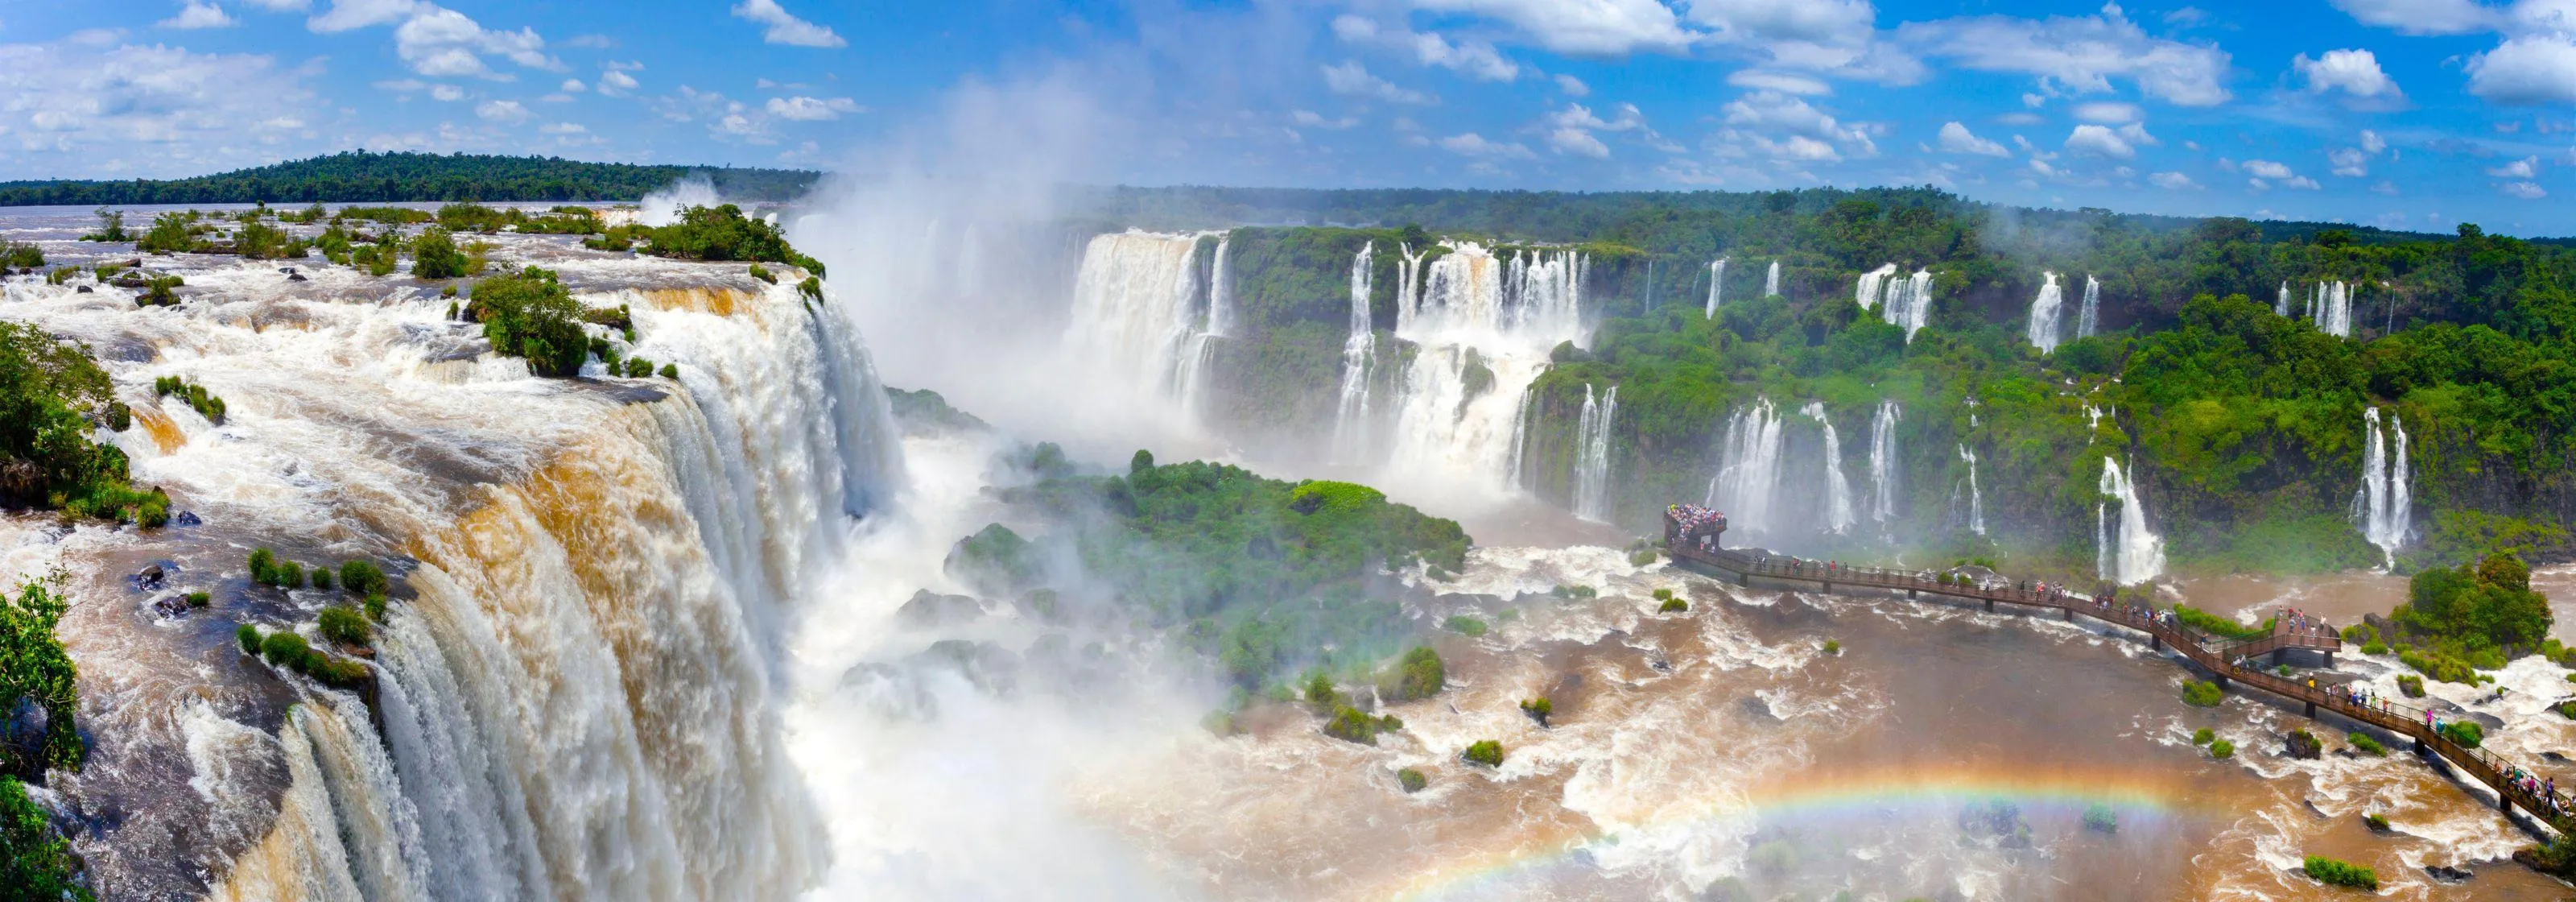 Foz do Iguacu | South Region, Brazil - Rated 5.7